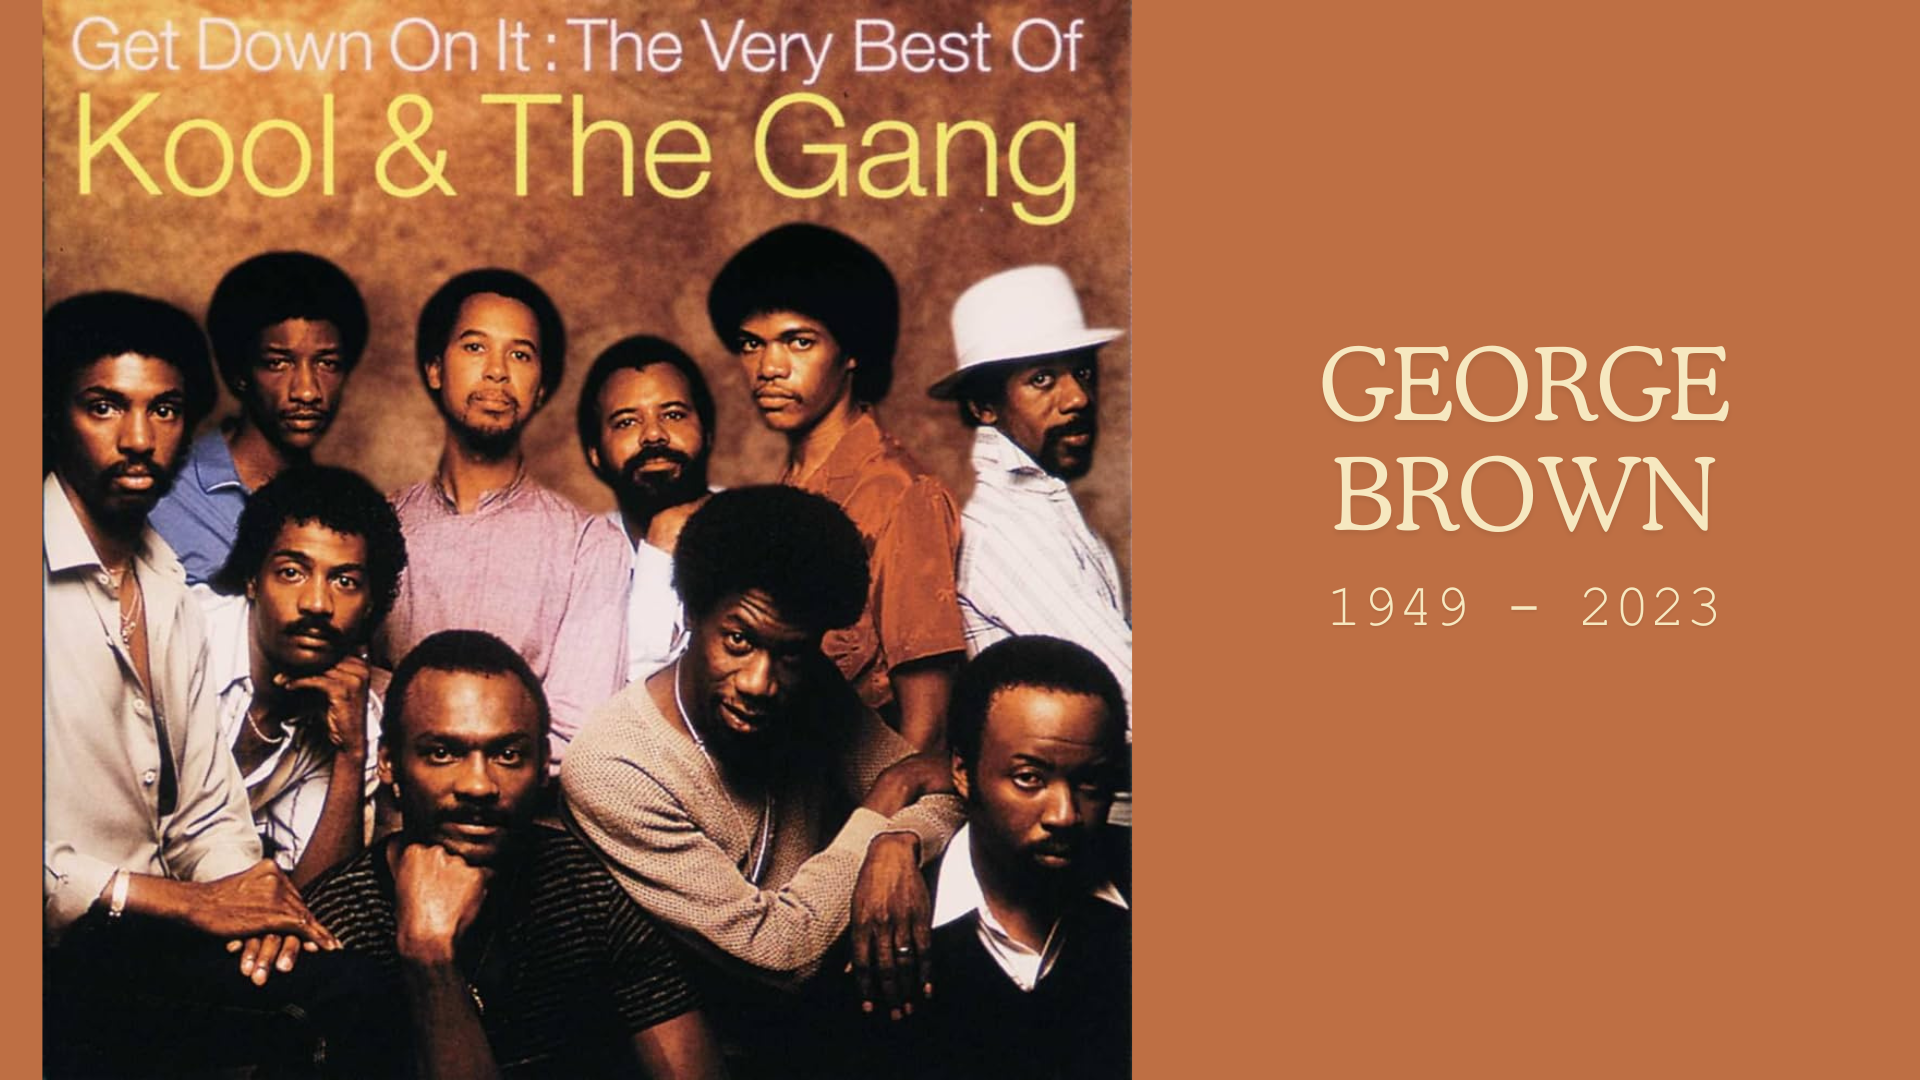 George Brown, Drummer of Kool And the Gang, Dies at 74